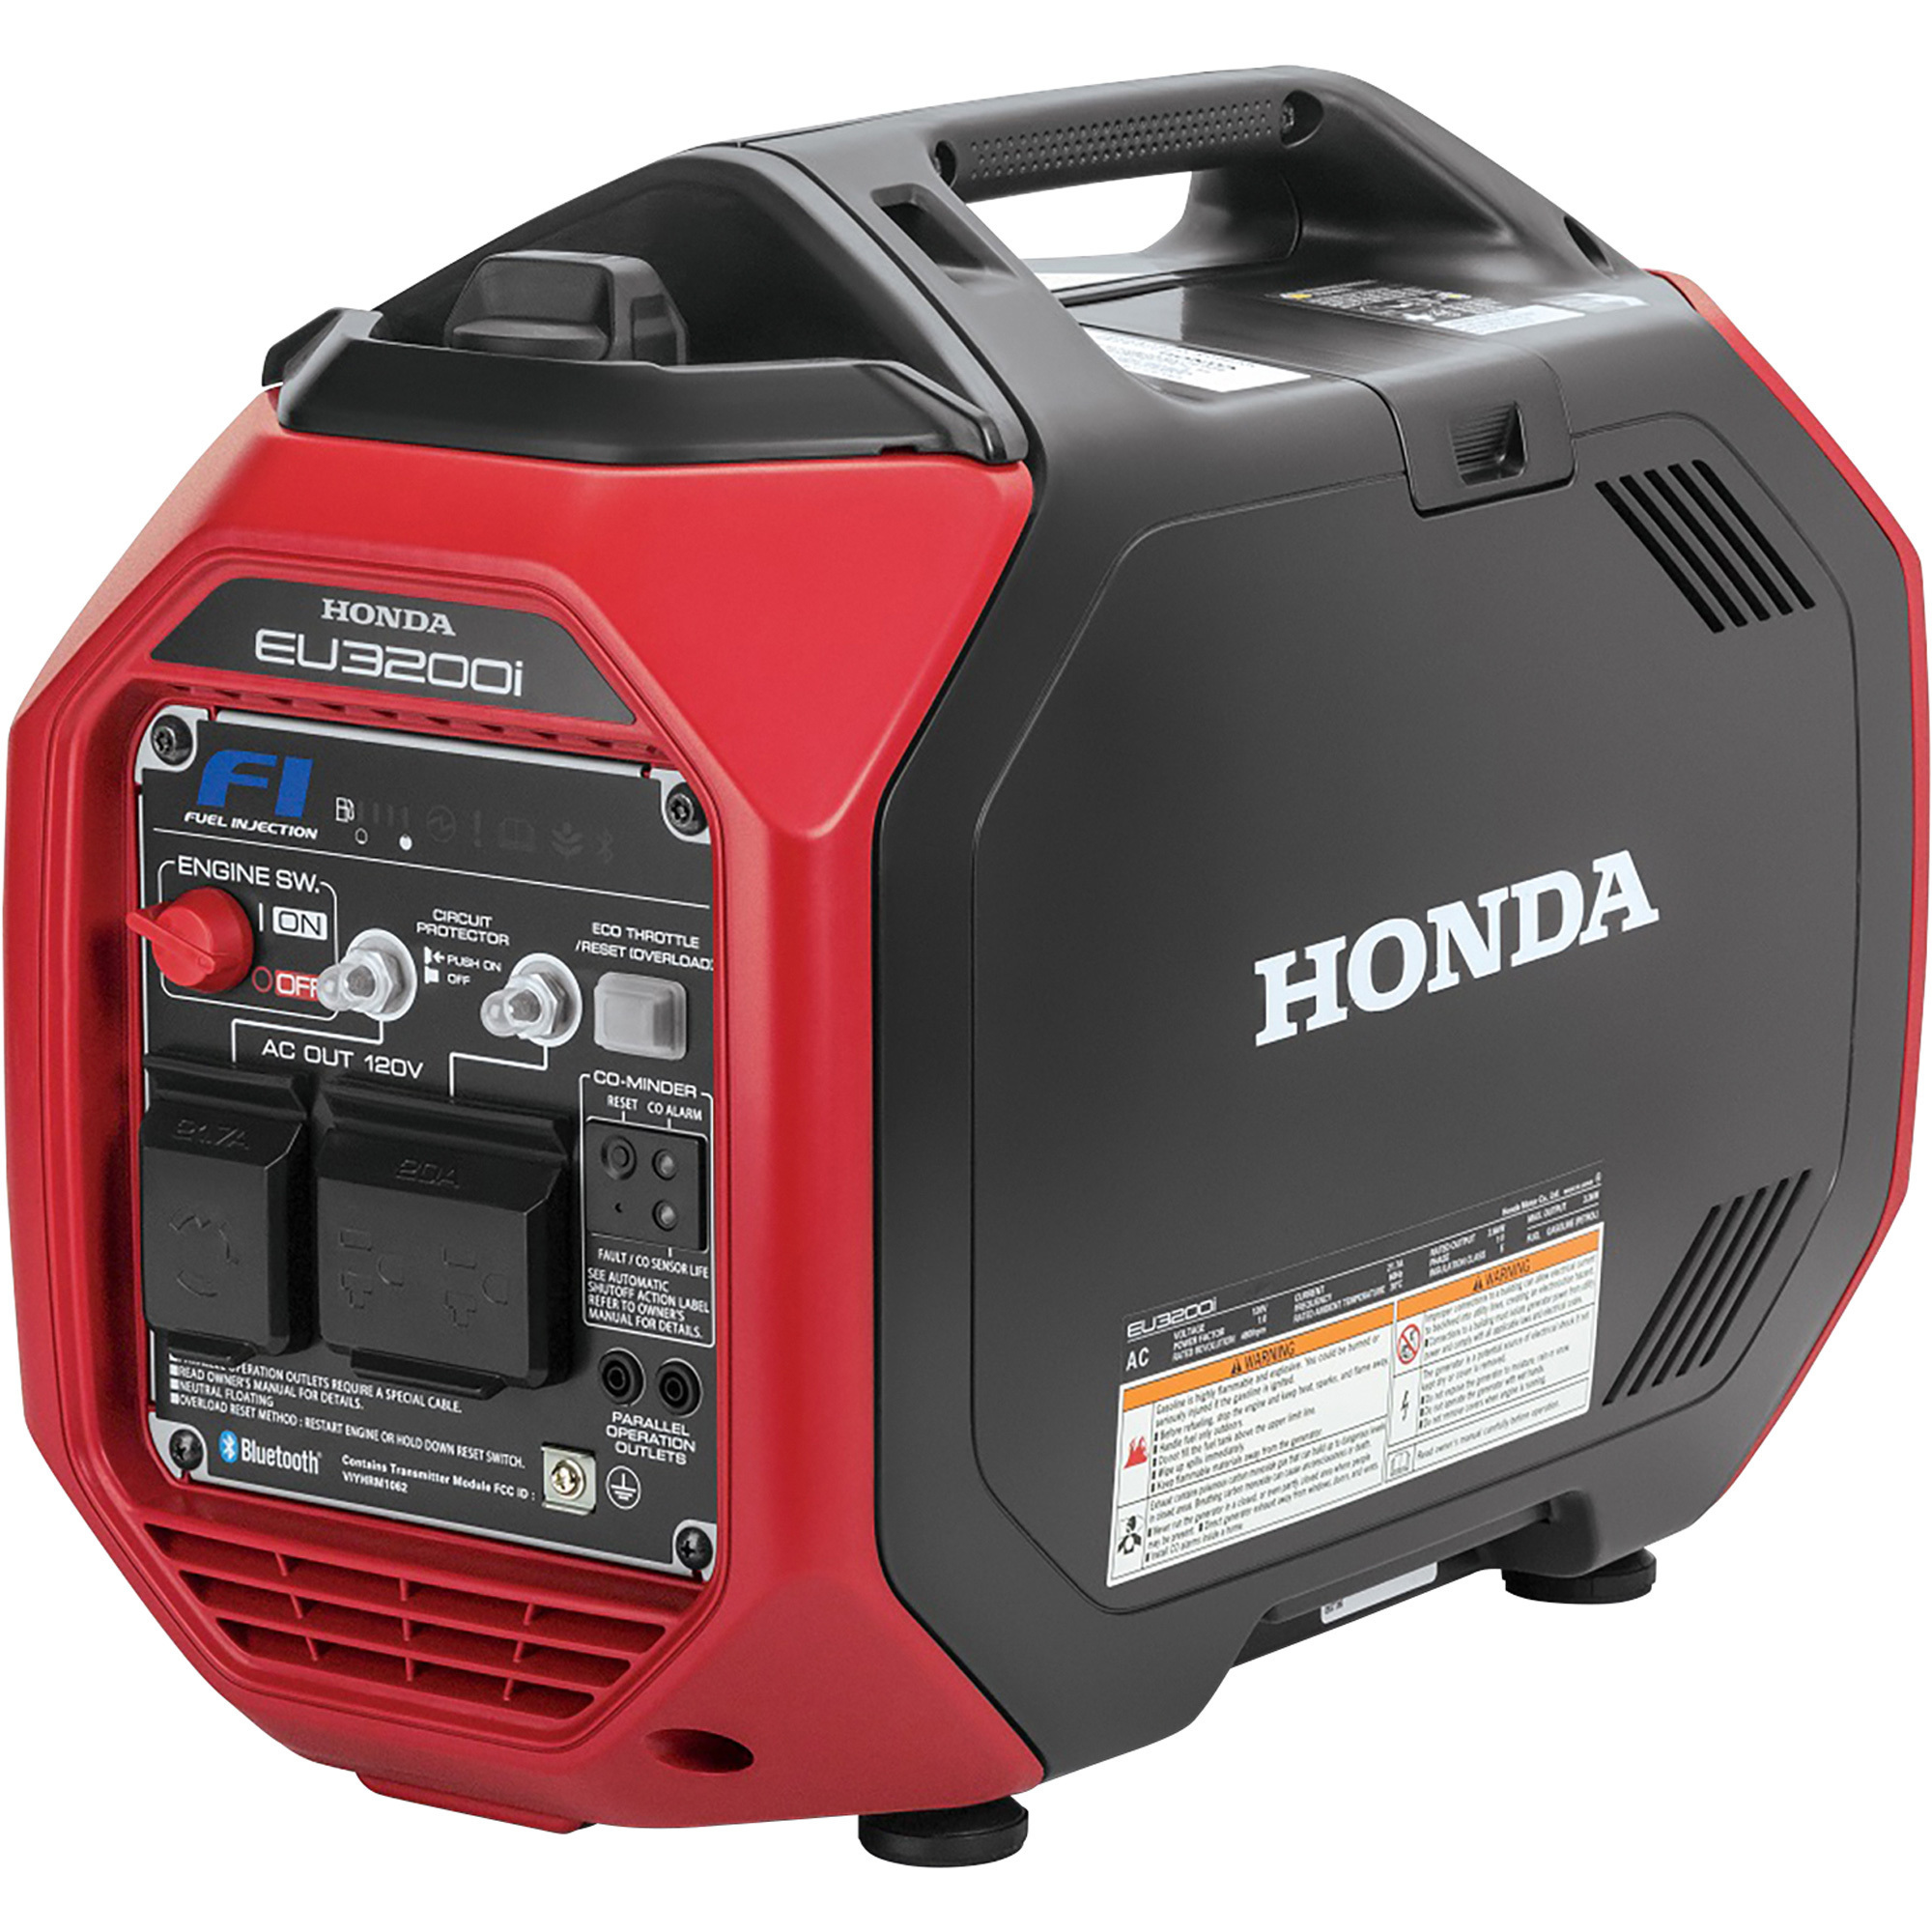 Honda 3200 Watt Inverter Generator â Model EU3200i